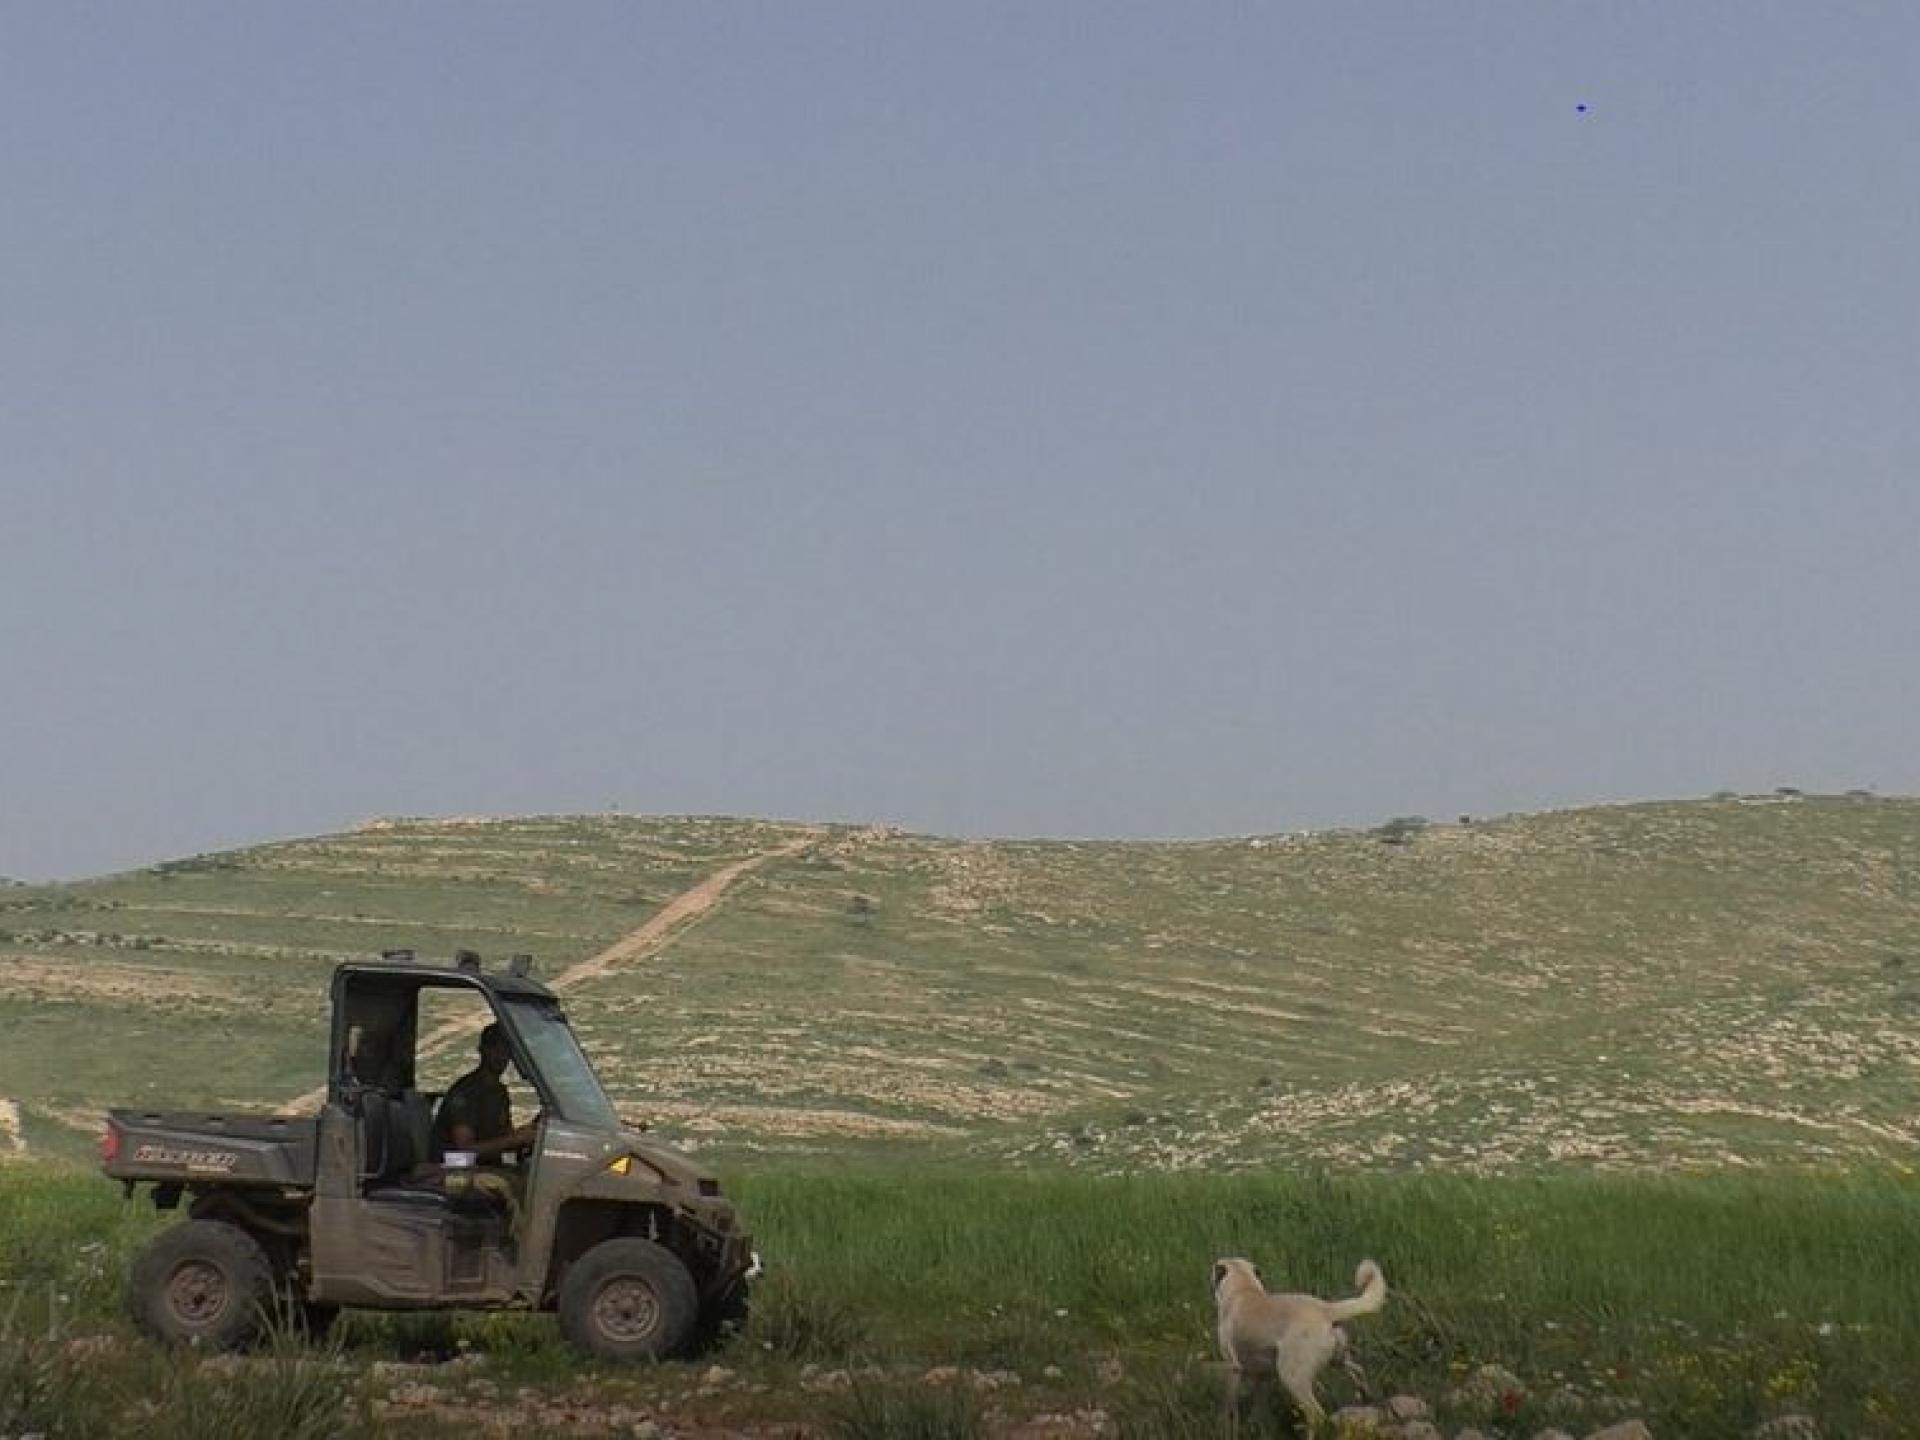 Jordan Valley: A settler riding an ATV next to a Palestinian’s field of oats.